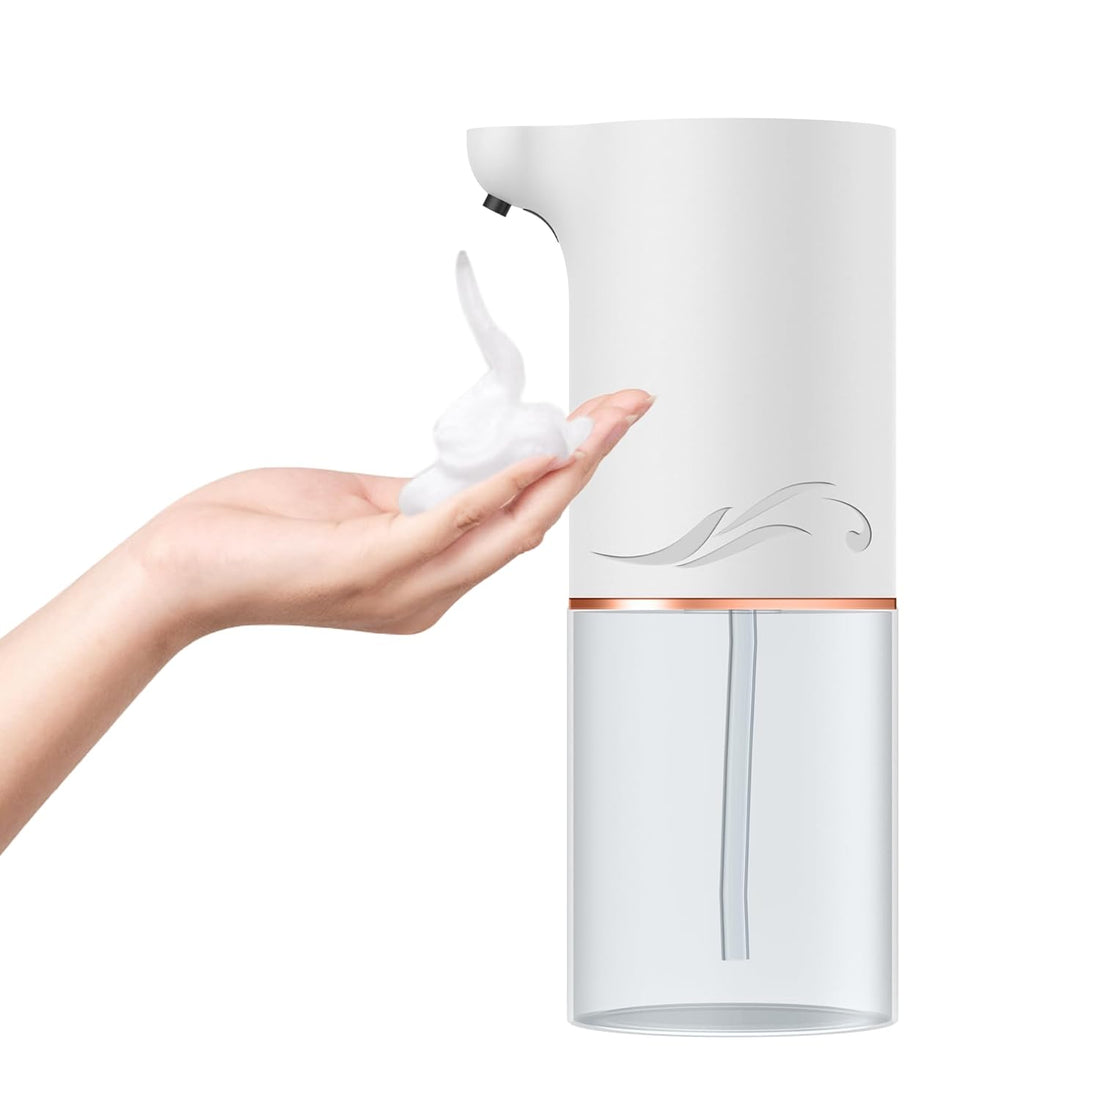 Automatic USB Rechargeable Foam Soap Dispenser